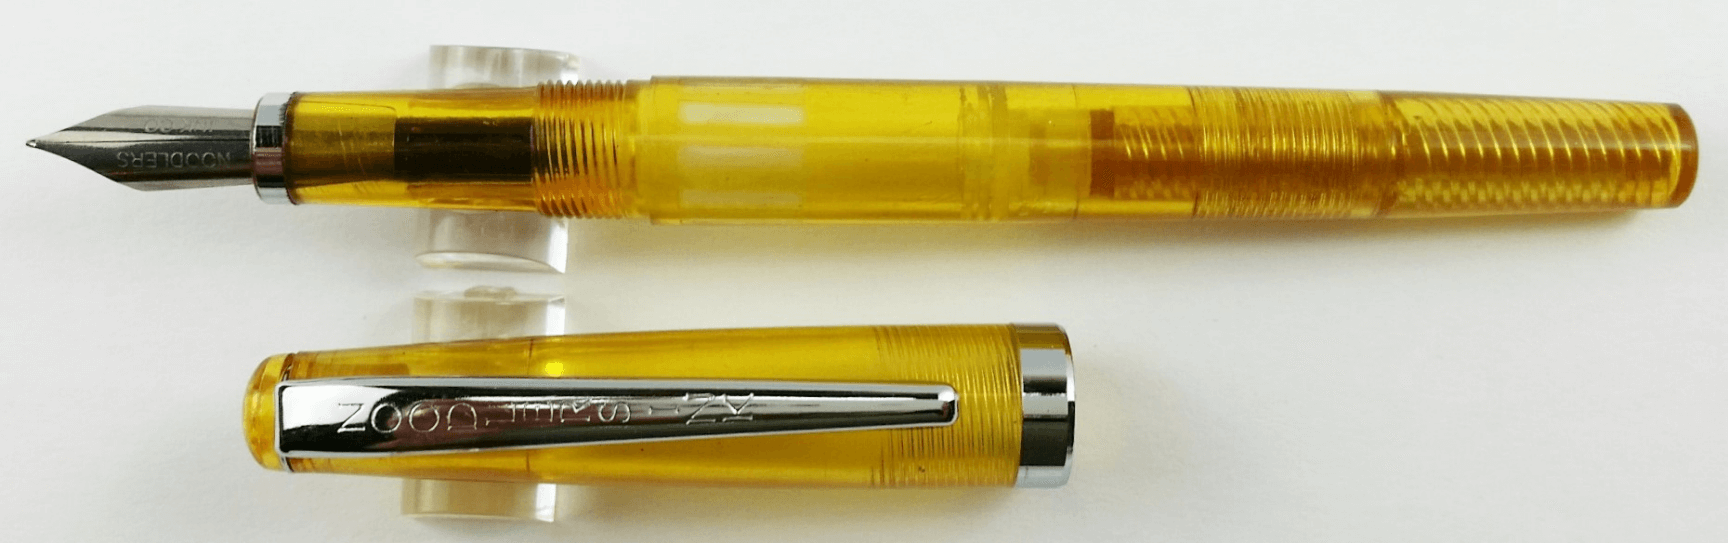 Noodler's Carniolan Honey Standard Flex Fountain Pen